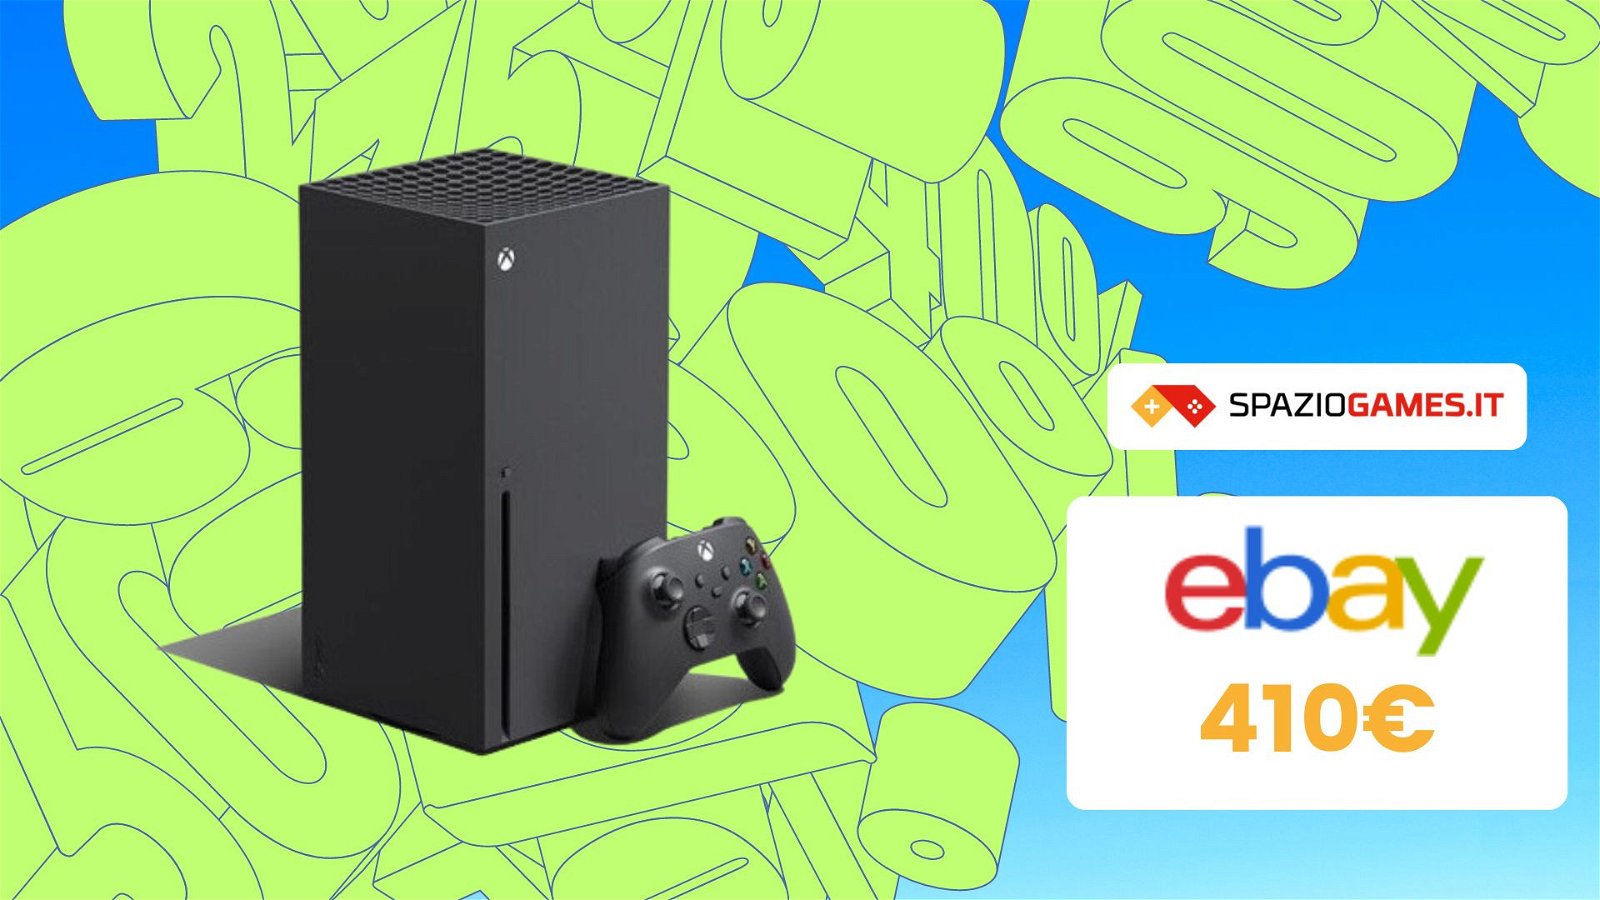 Xbox Series X, la console più potente, ora vostra a MENO DI 410€! IMPERDIBILE!